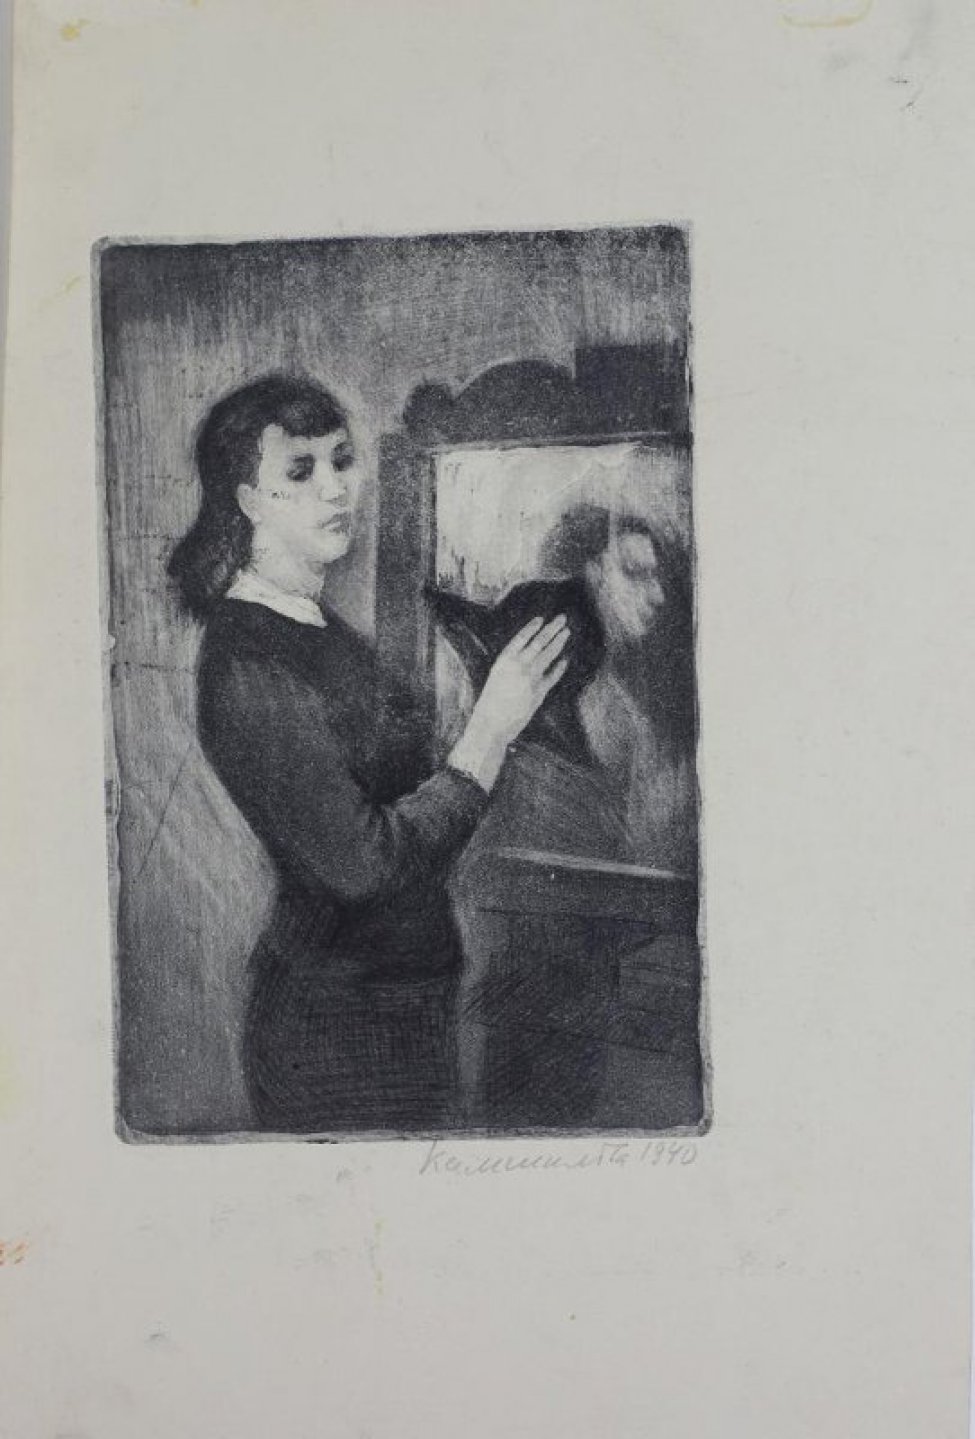 Изображена молодая женщина стоящая перед зеркалом со шляпой в руках.